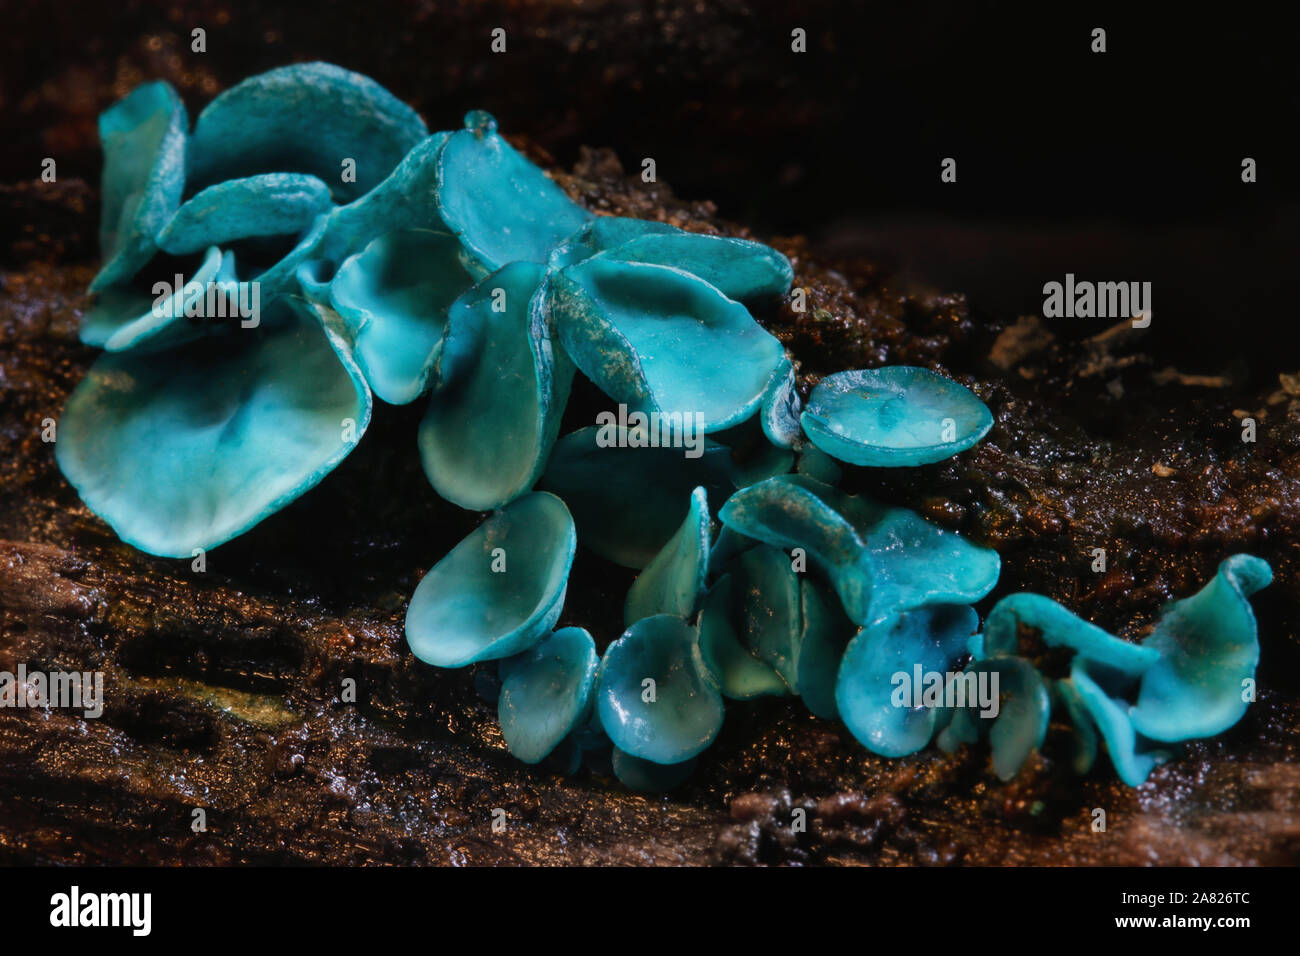 Macro Immagine di coloratissimi fungo Chlorocyboria aurigenescens - La Verde Elf Cup. Foto Stock